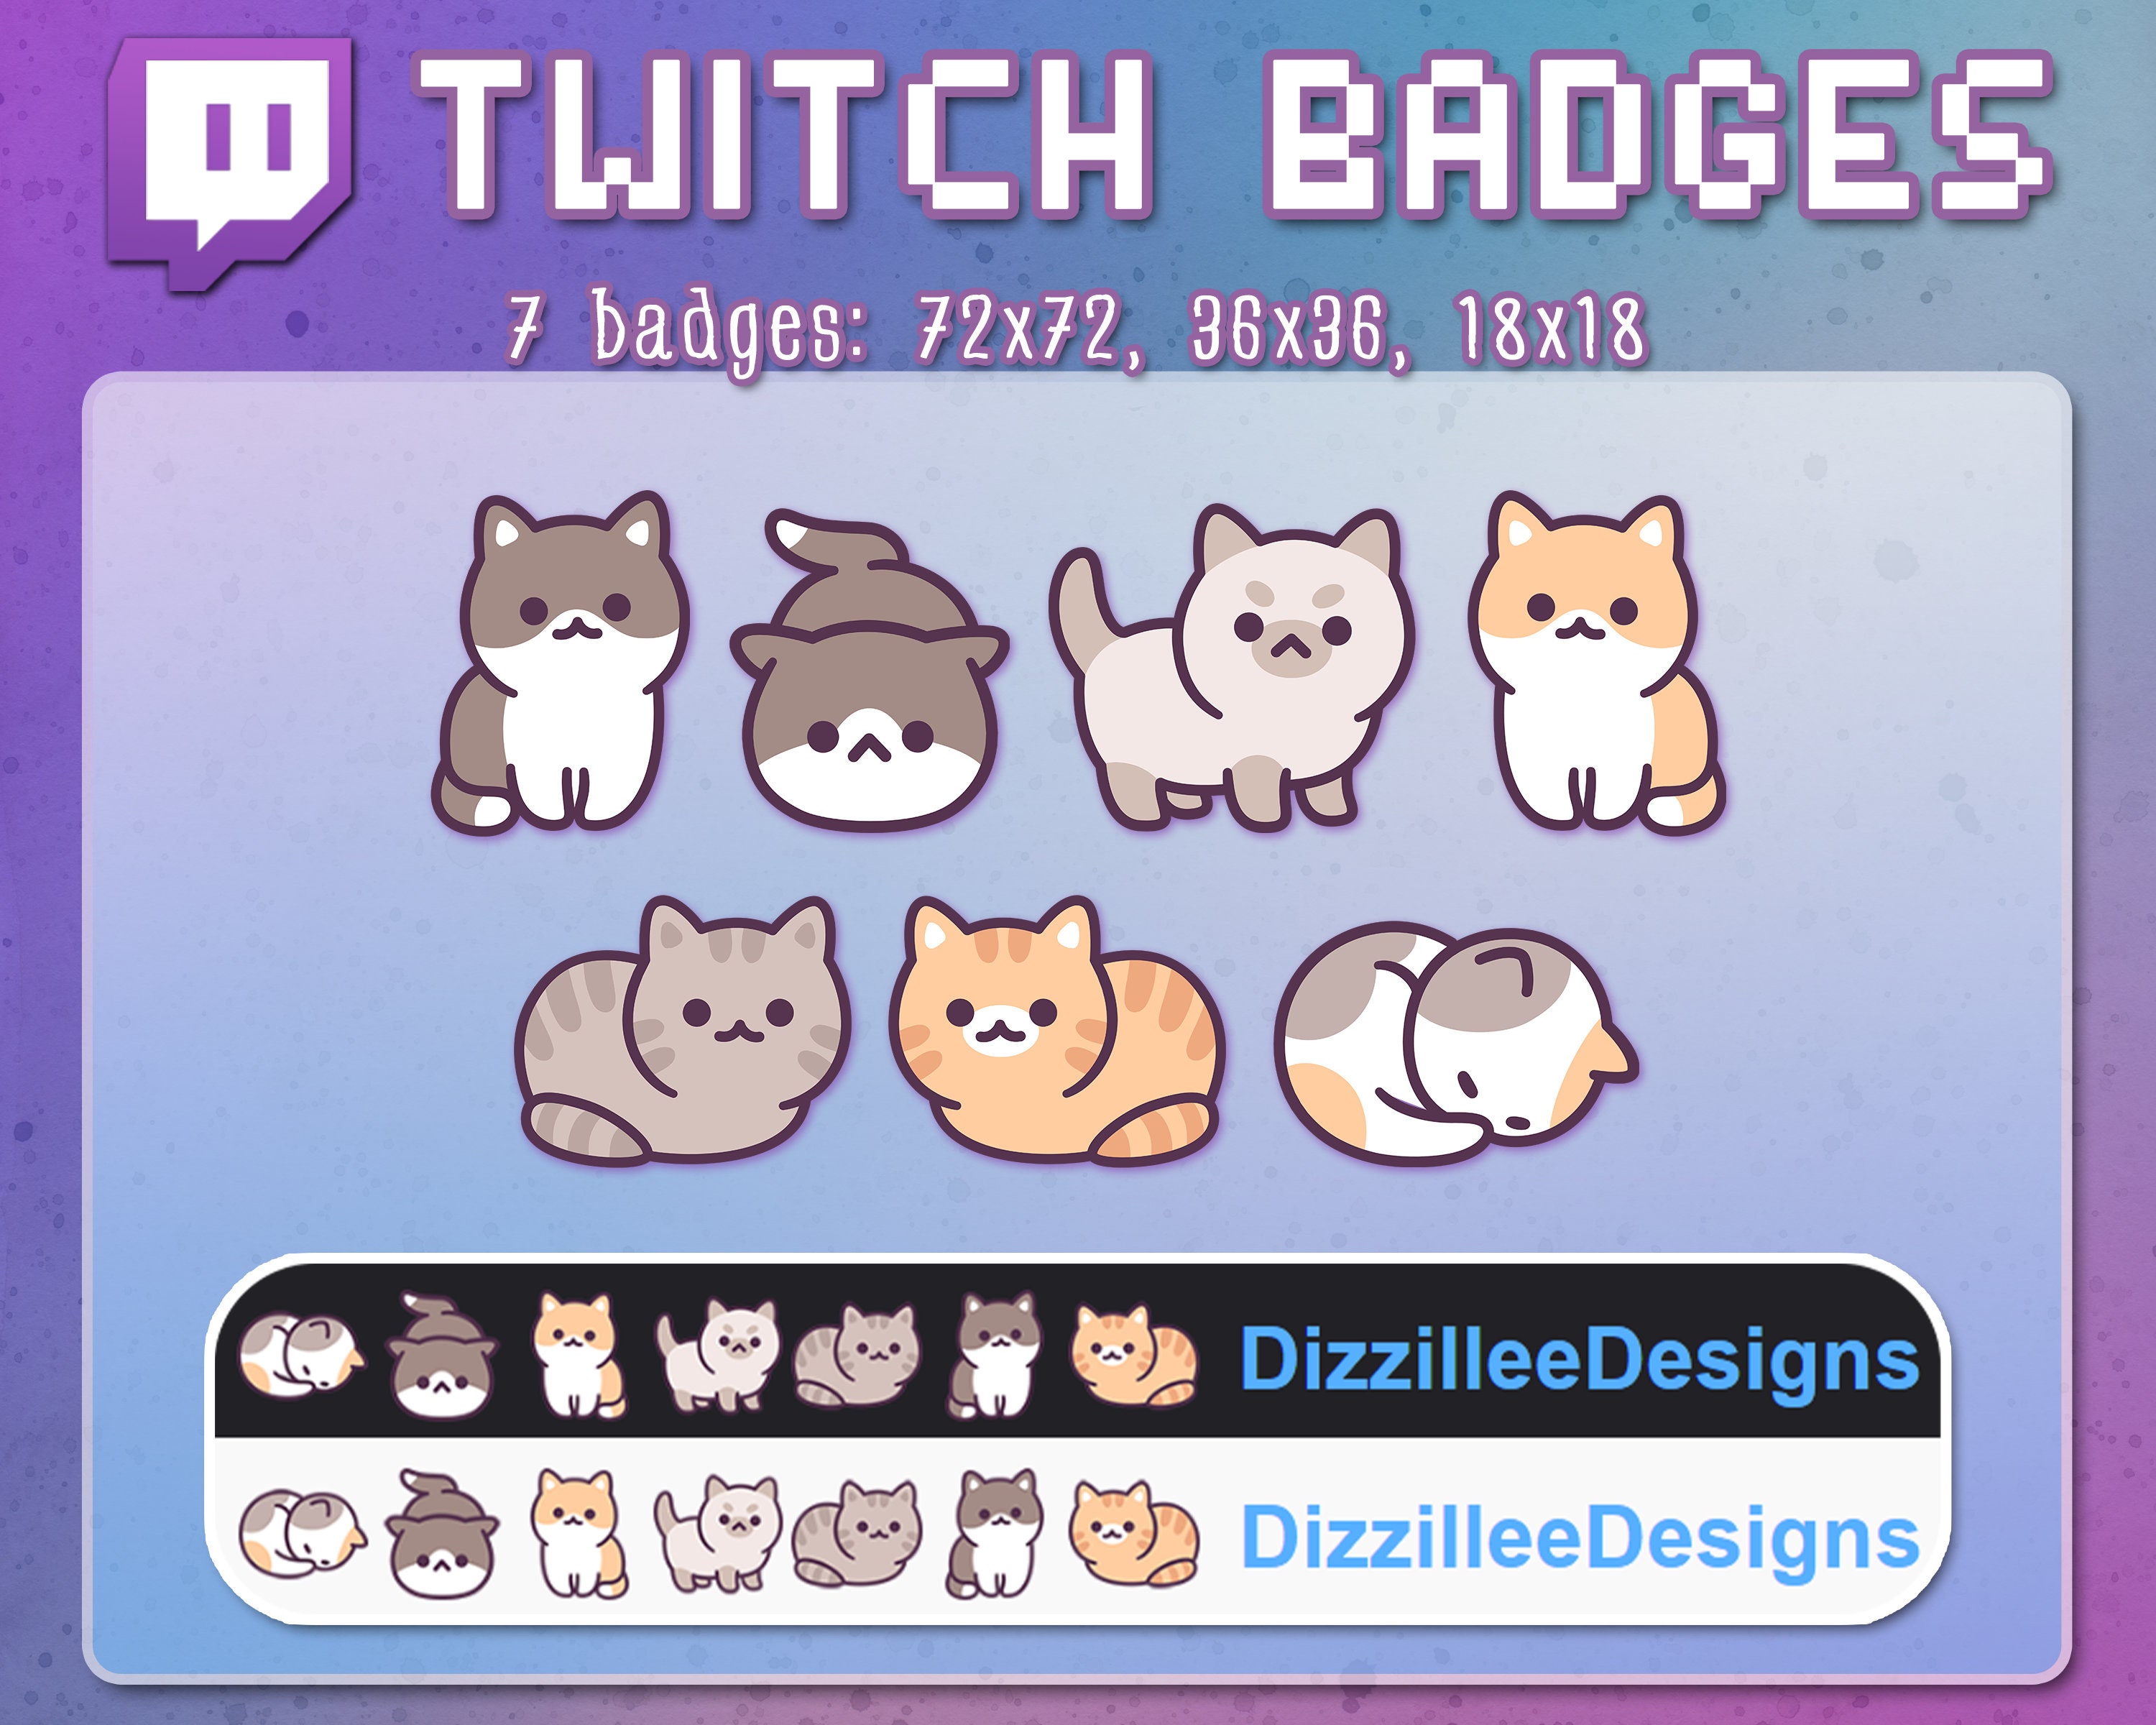 Cat Sub Badges, Twitch Sub Badges